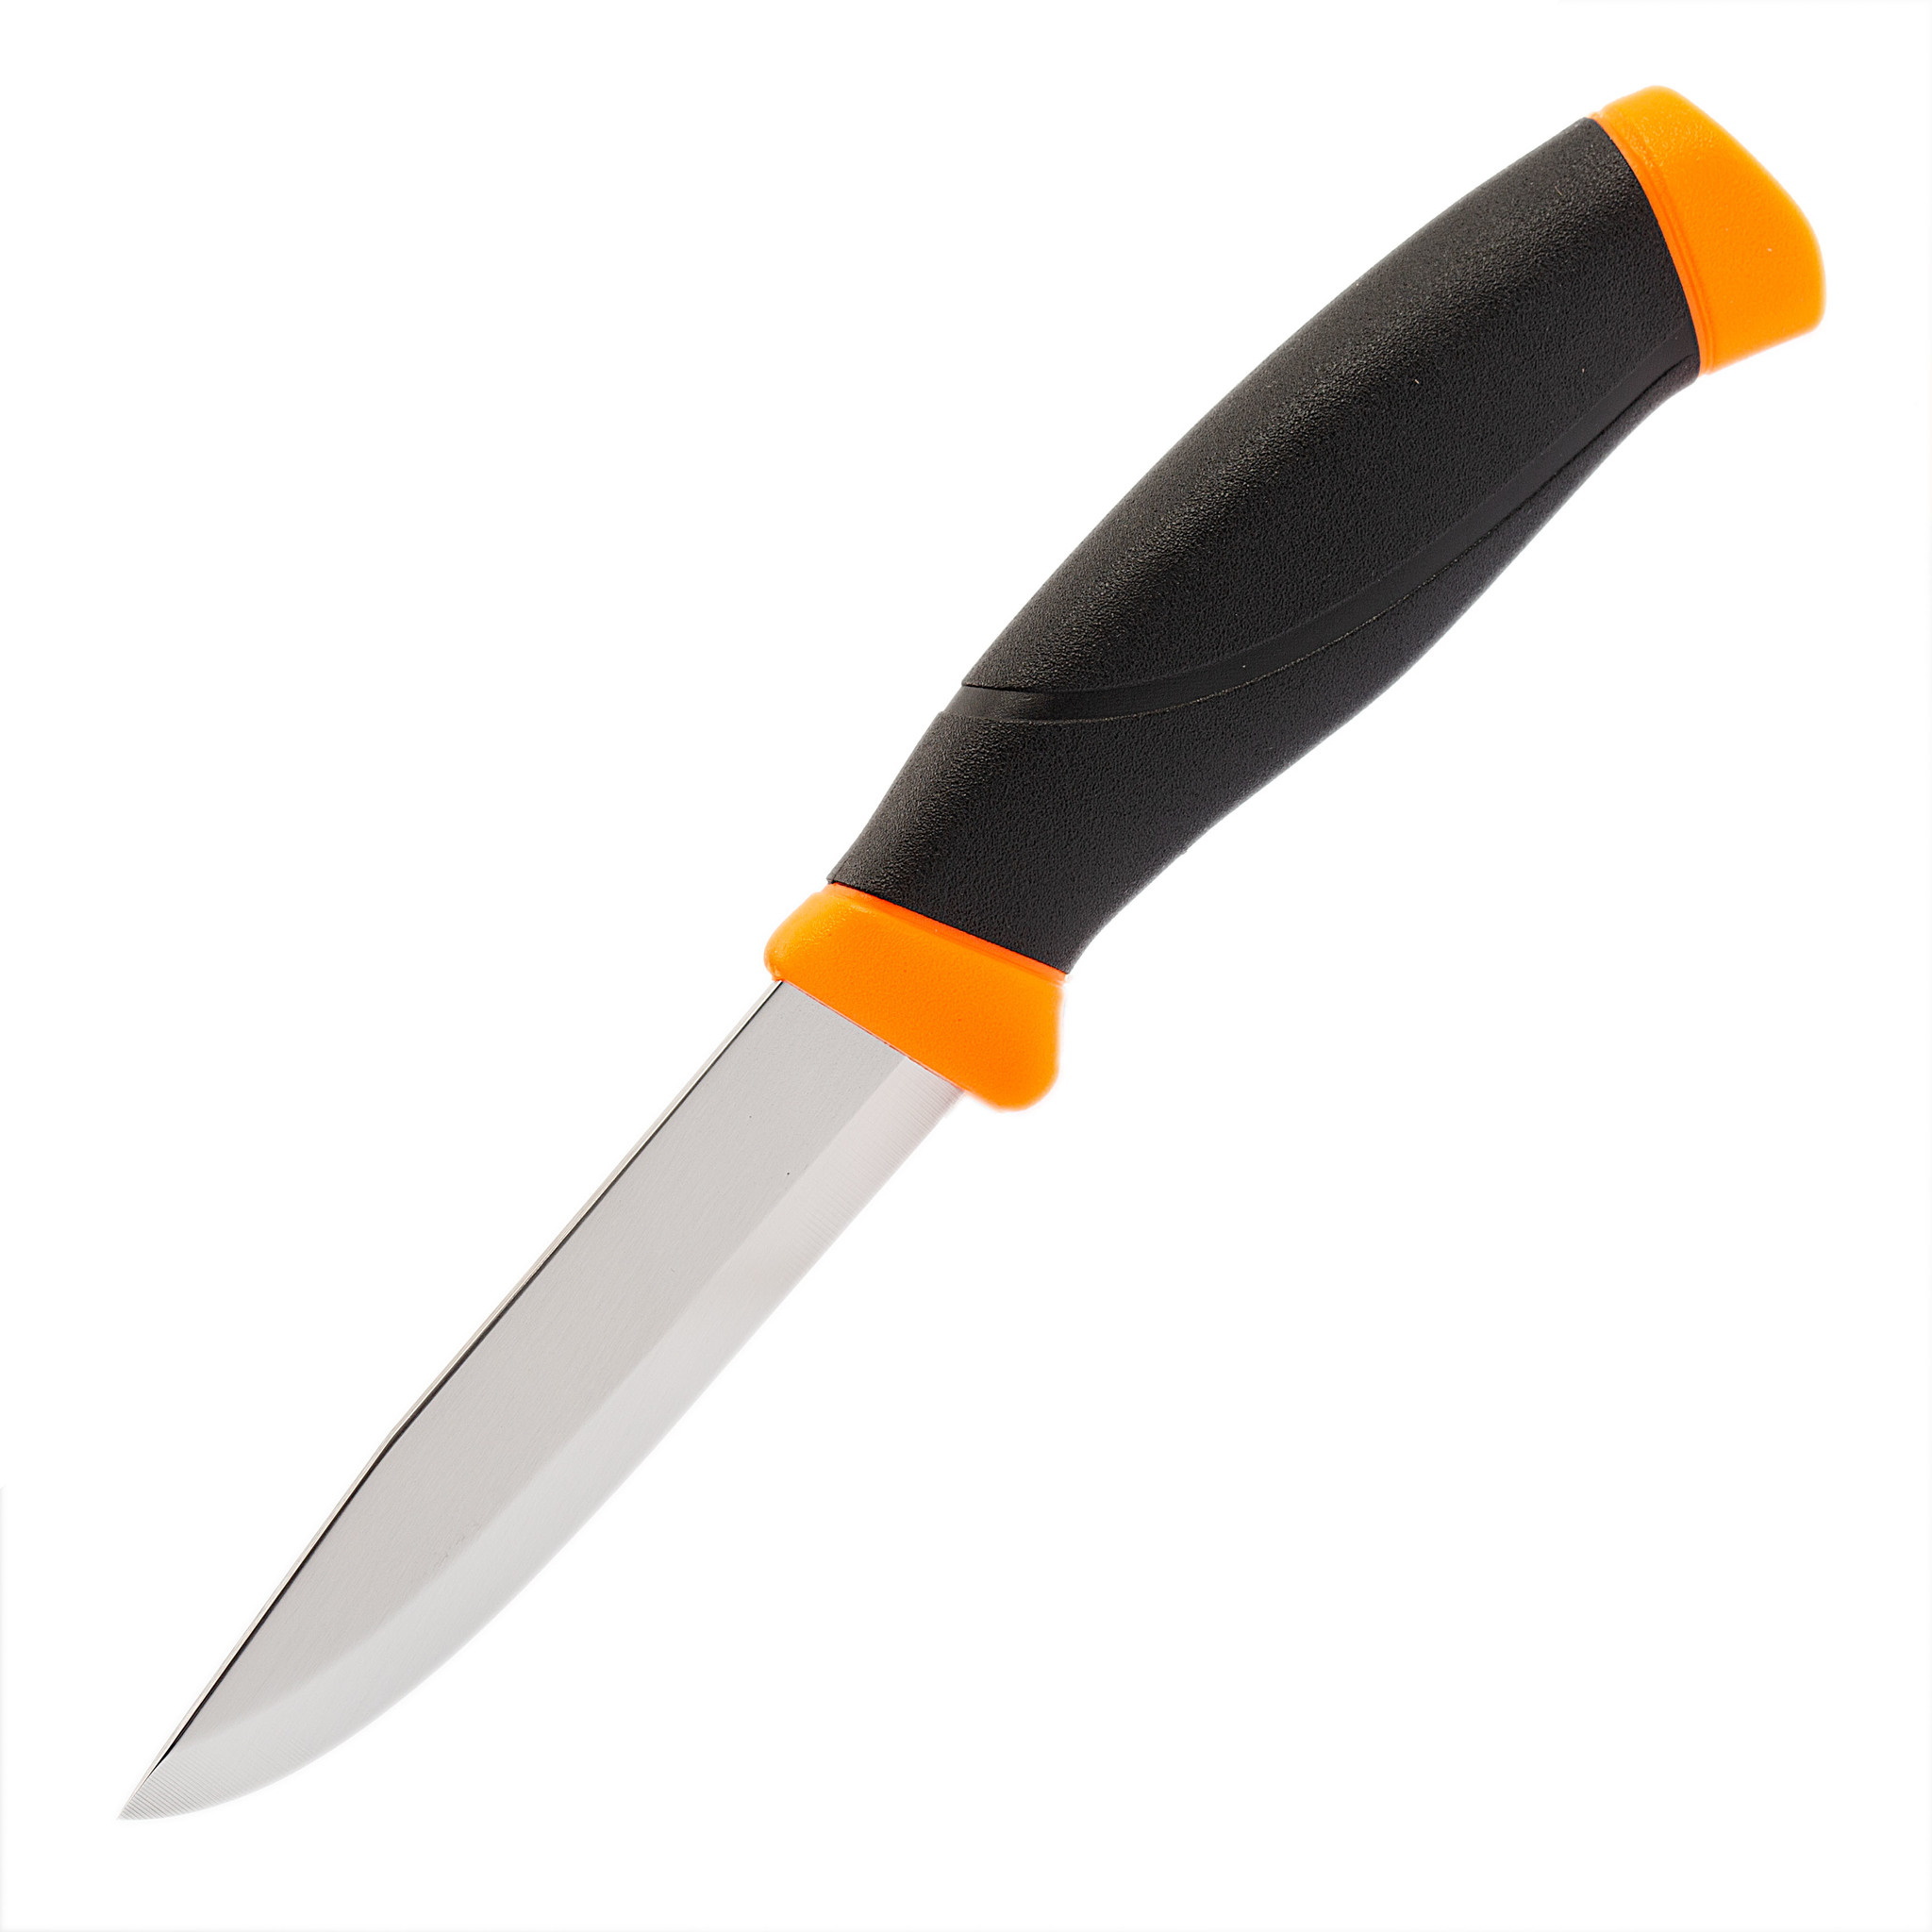 Нож с фиксированным лезвием Morakniv Companion Orange, сталь Sandvik 12C27, рукоять резина/пластик, оранжевый